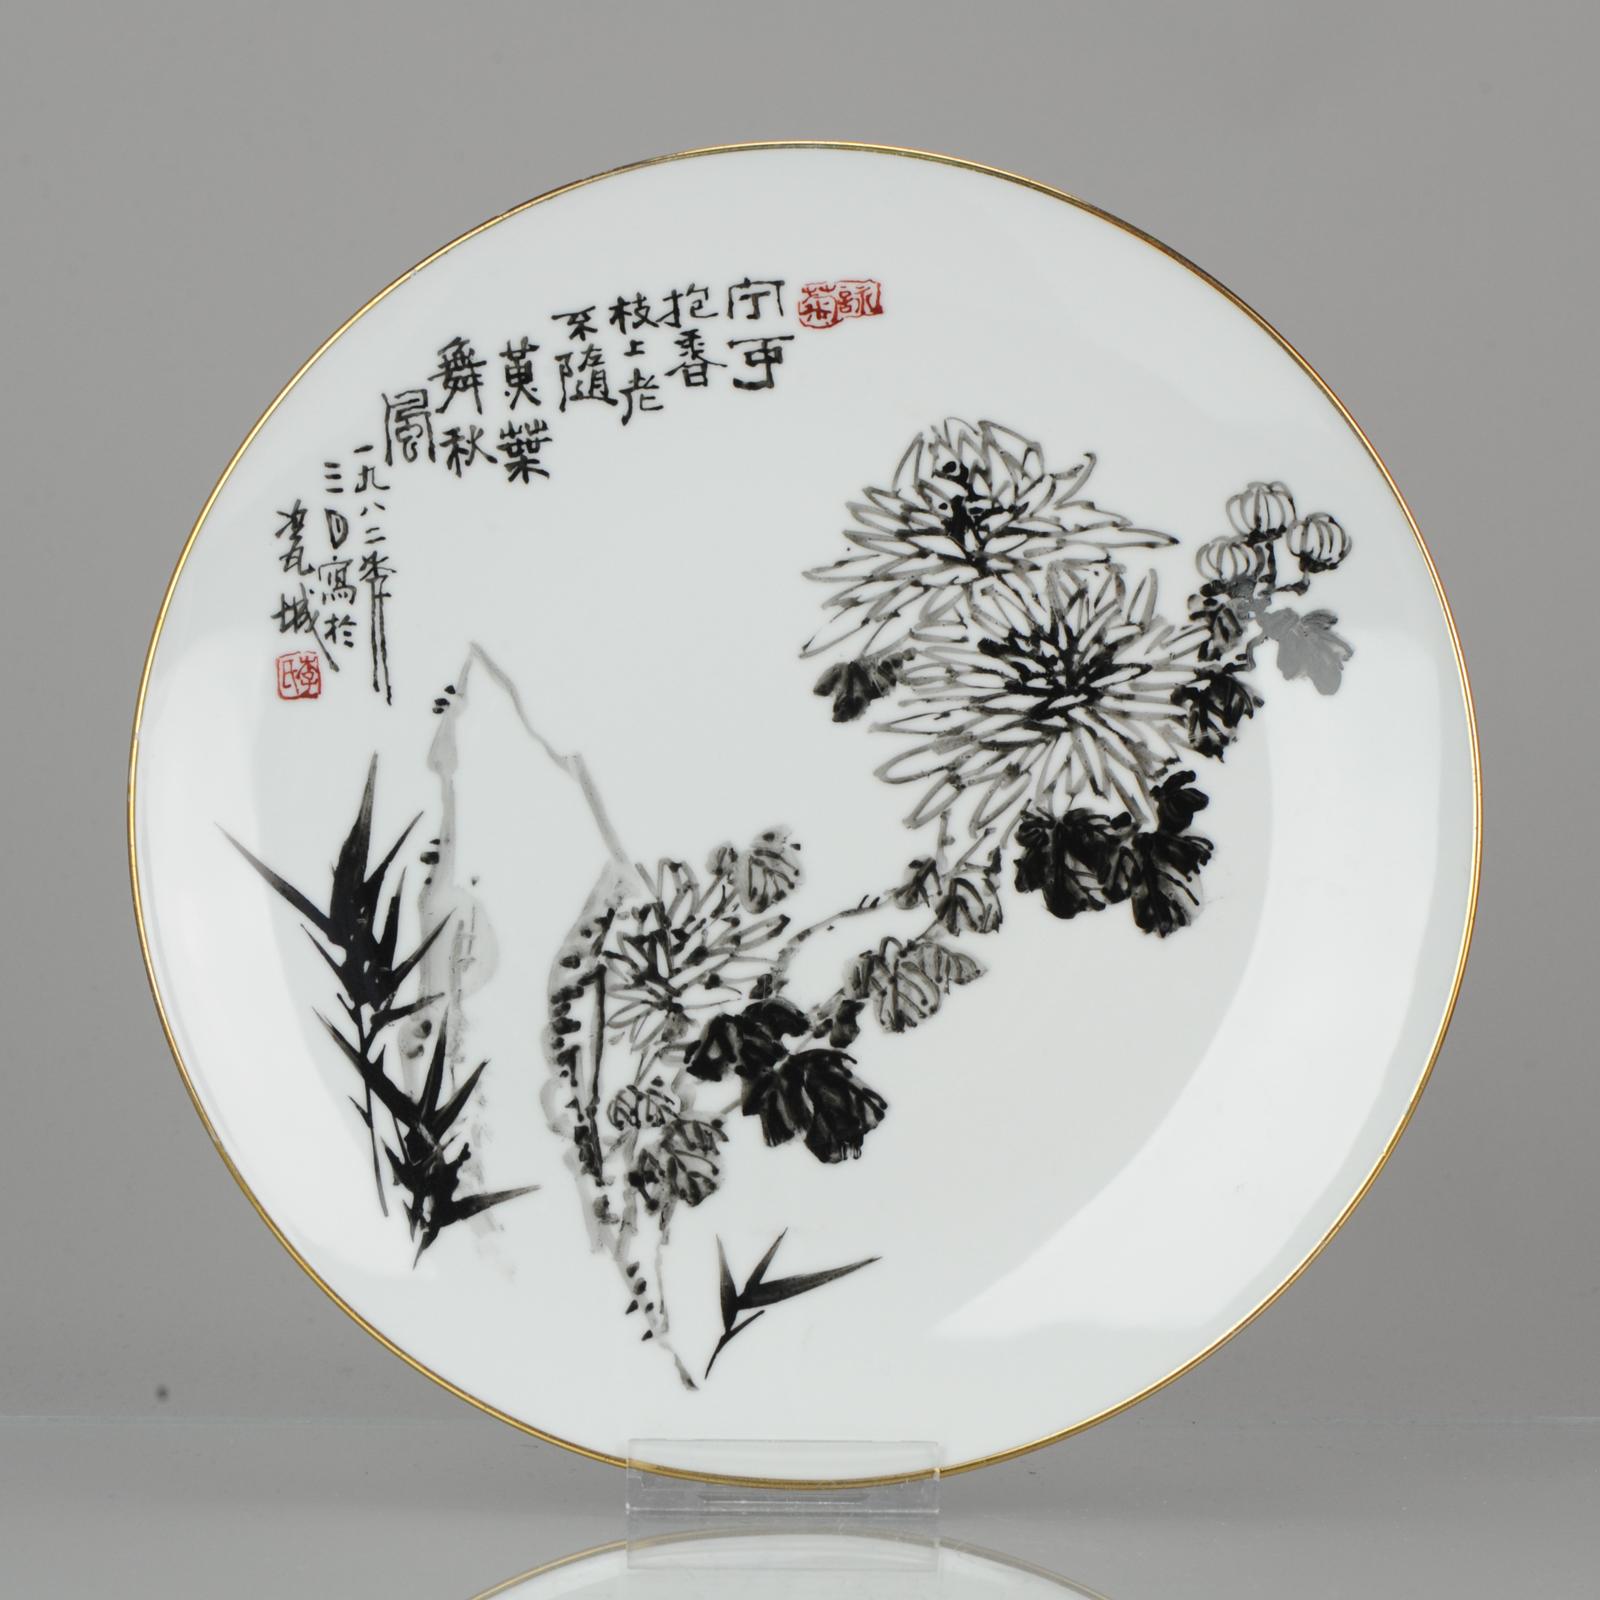 Ein sehr schön bemalter Teller aus dem Jahr 1982. Mit einem Gedicht und einer Szene aus Bambus und Chrysantheme.

Chrysantheme

Eine der 